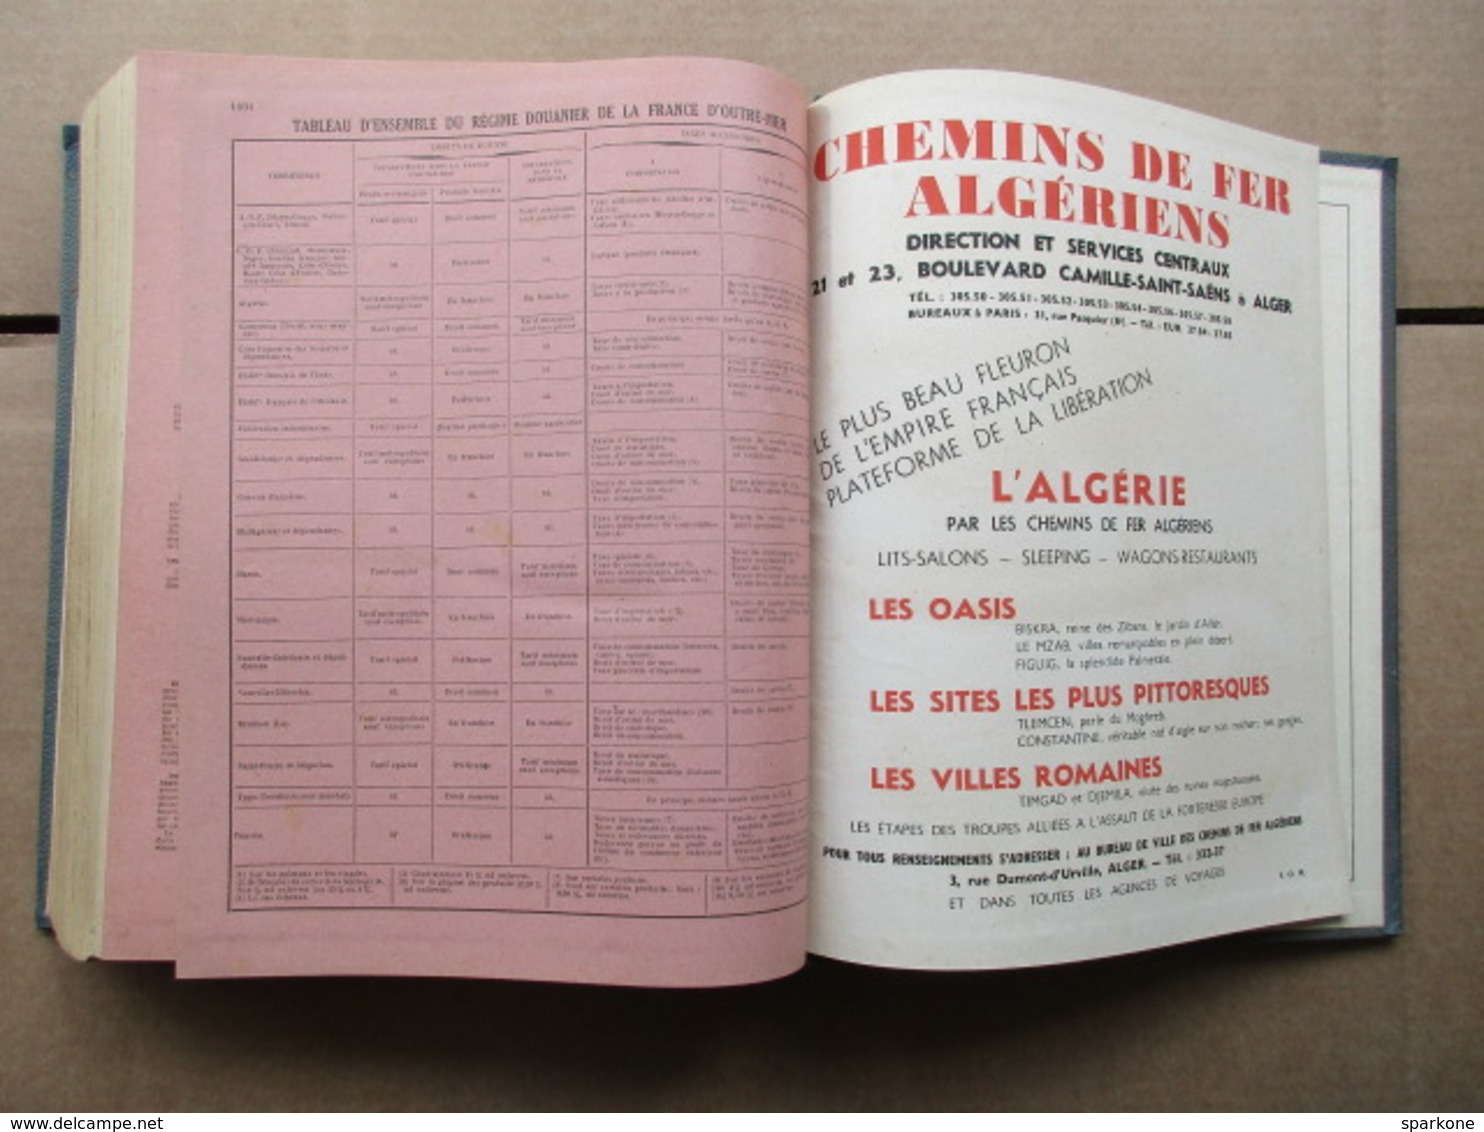 Annuaire du Commerce / Didot-Bottin / France d'Outre-Mer de 1947